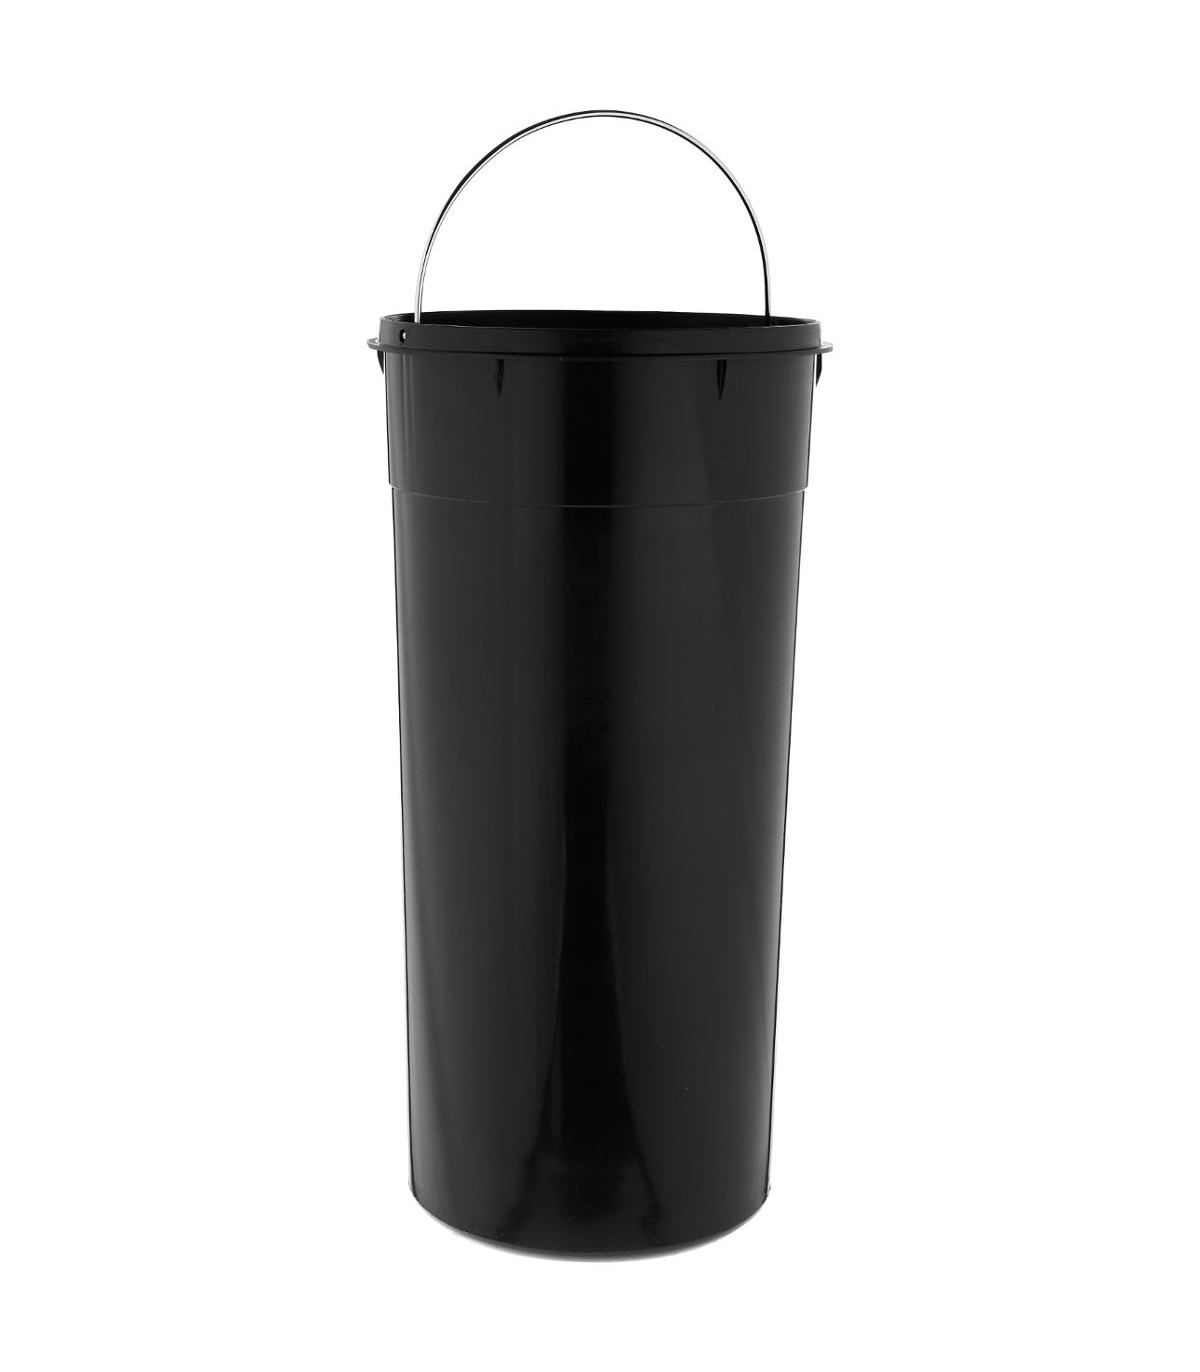 poubelle-30-litres-en-inox-brosse-ouverture-a-pedale (4)